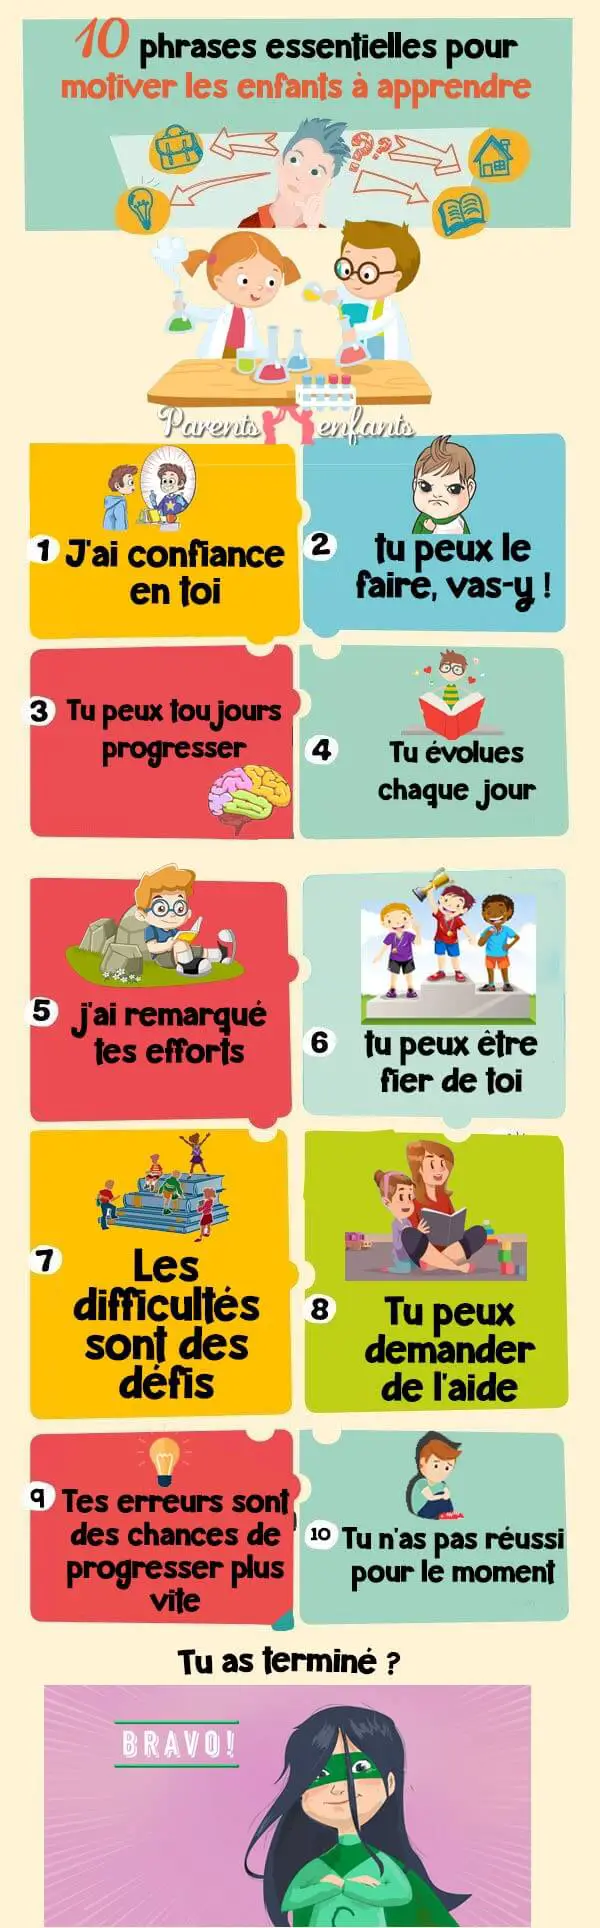 10 phrases essentielles pour motiver les enfants à apprendre